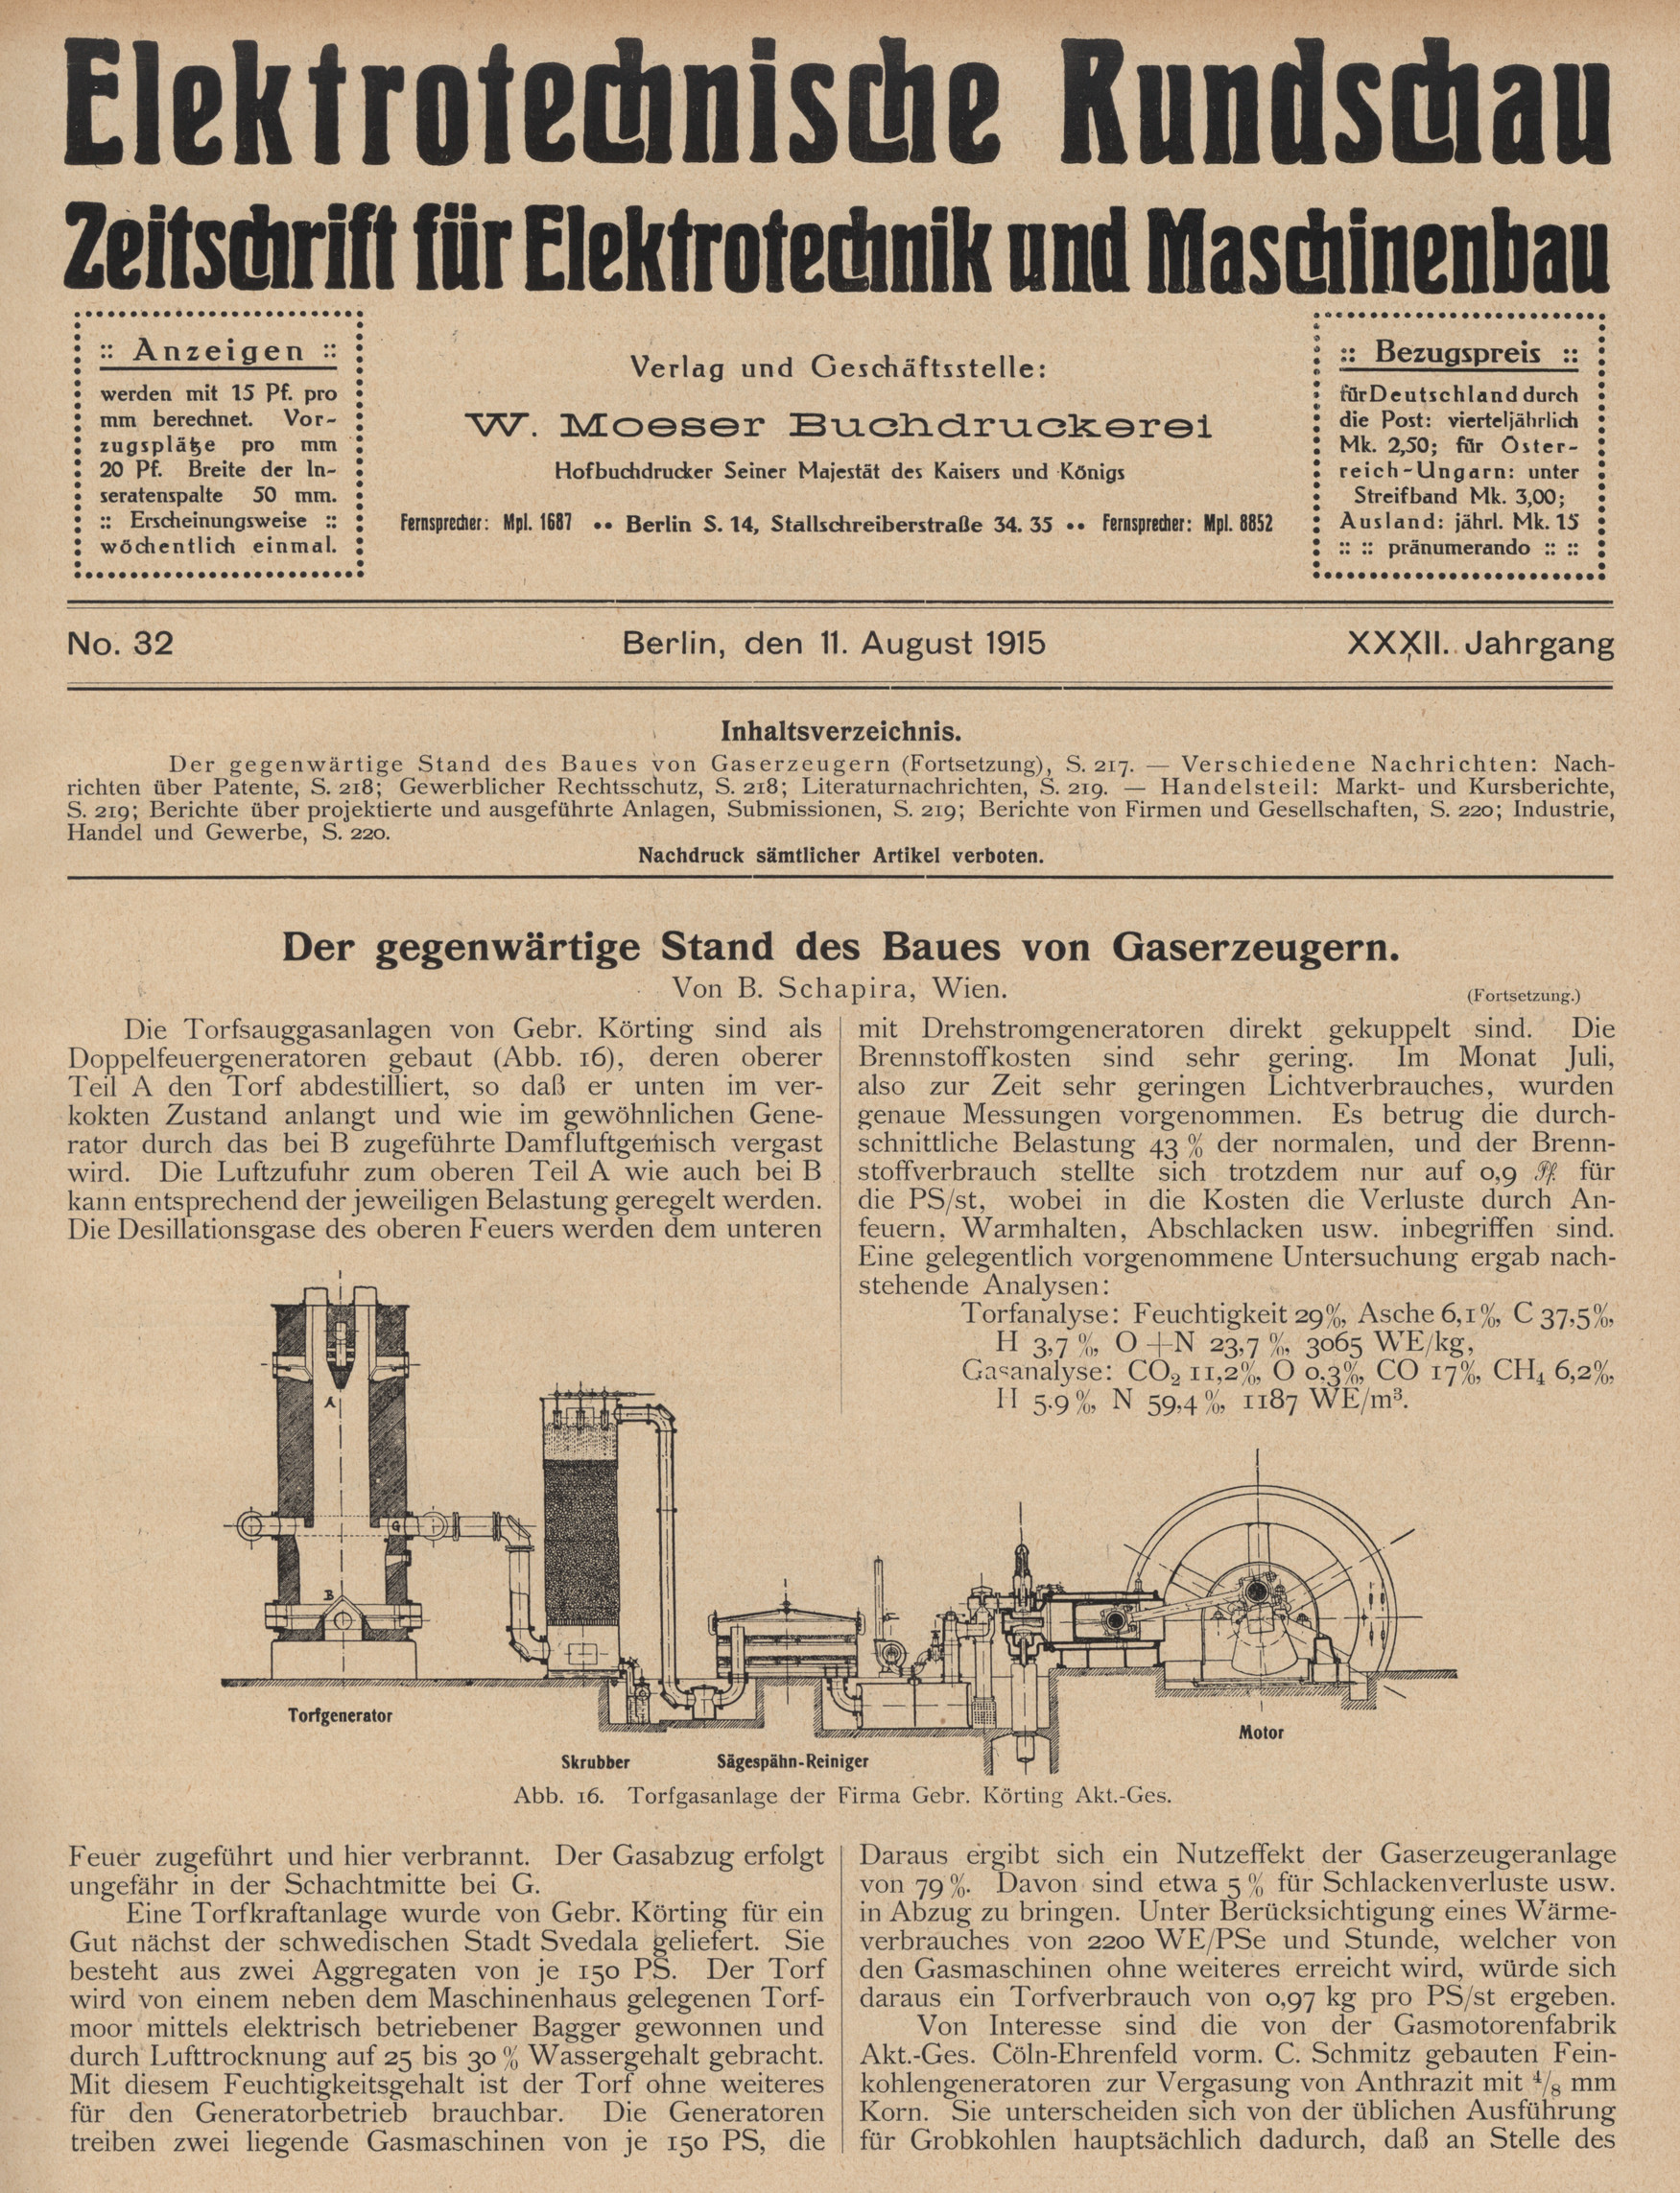 Elektrotechnische Rundschau : Zeitschrift für Elektrotechnik und Maschinenbau + Polytechnische Rundschau, No. 32, XXXII. Jahrgang